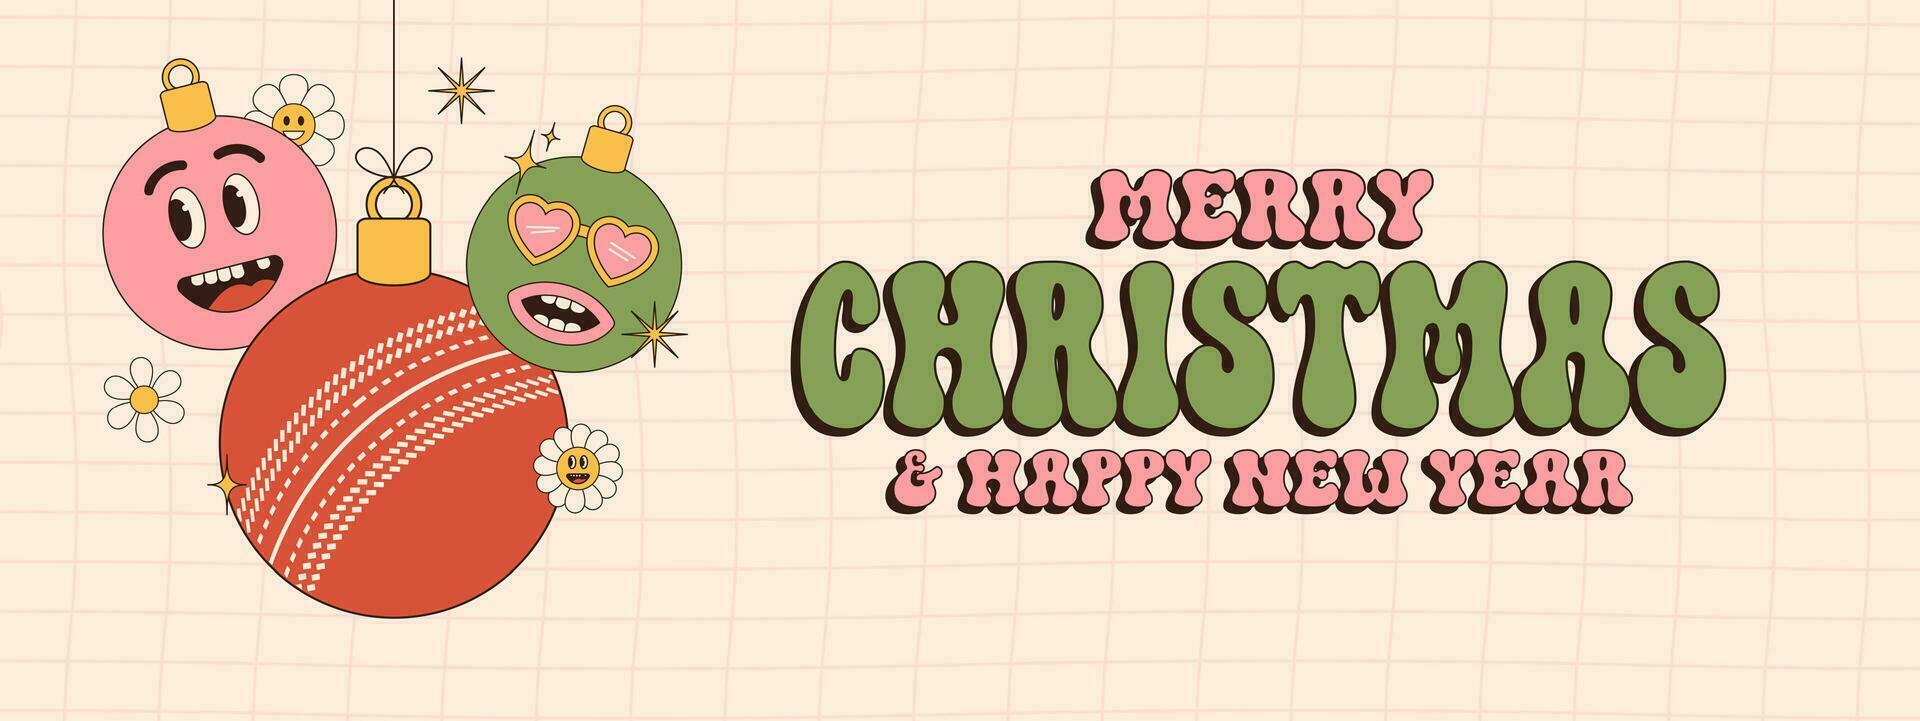 Grillo alegre Navidad y contento nuevo año maravilloso Deportes saludo tarjeta. colgando pelota como un maravilloso Navidad pelota en vibrante antecedentes. vector ilustración.